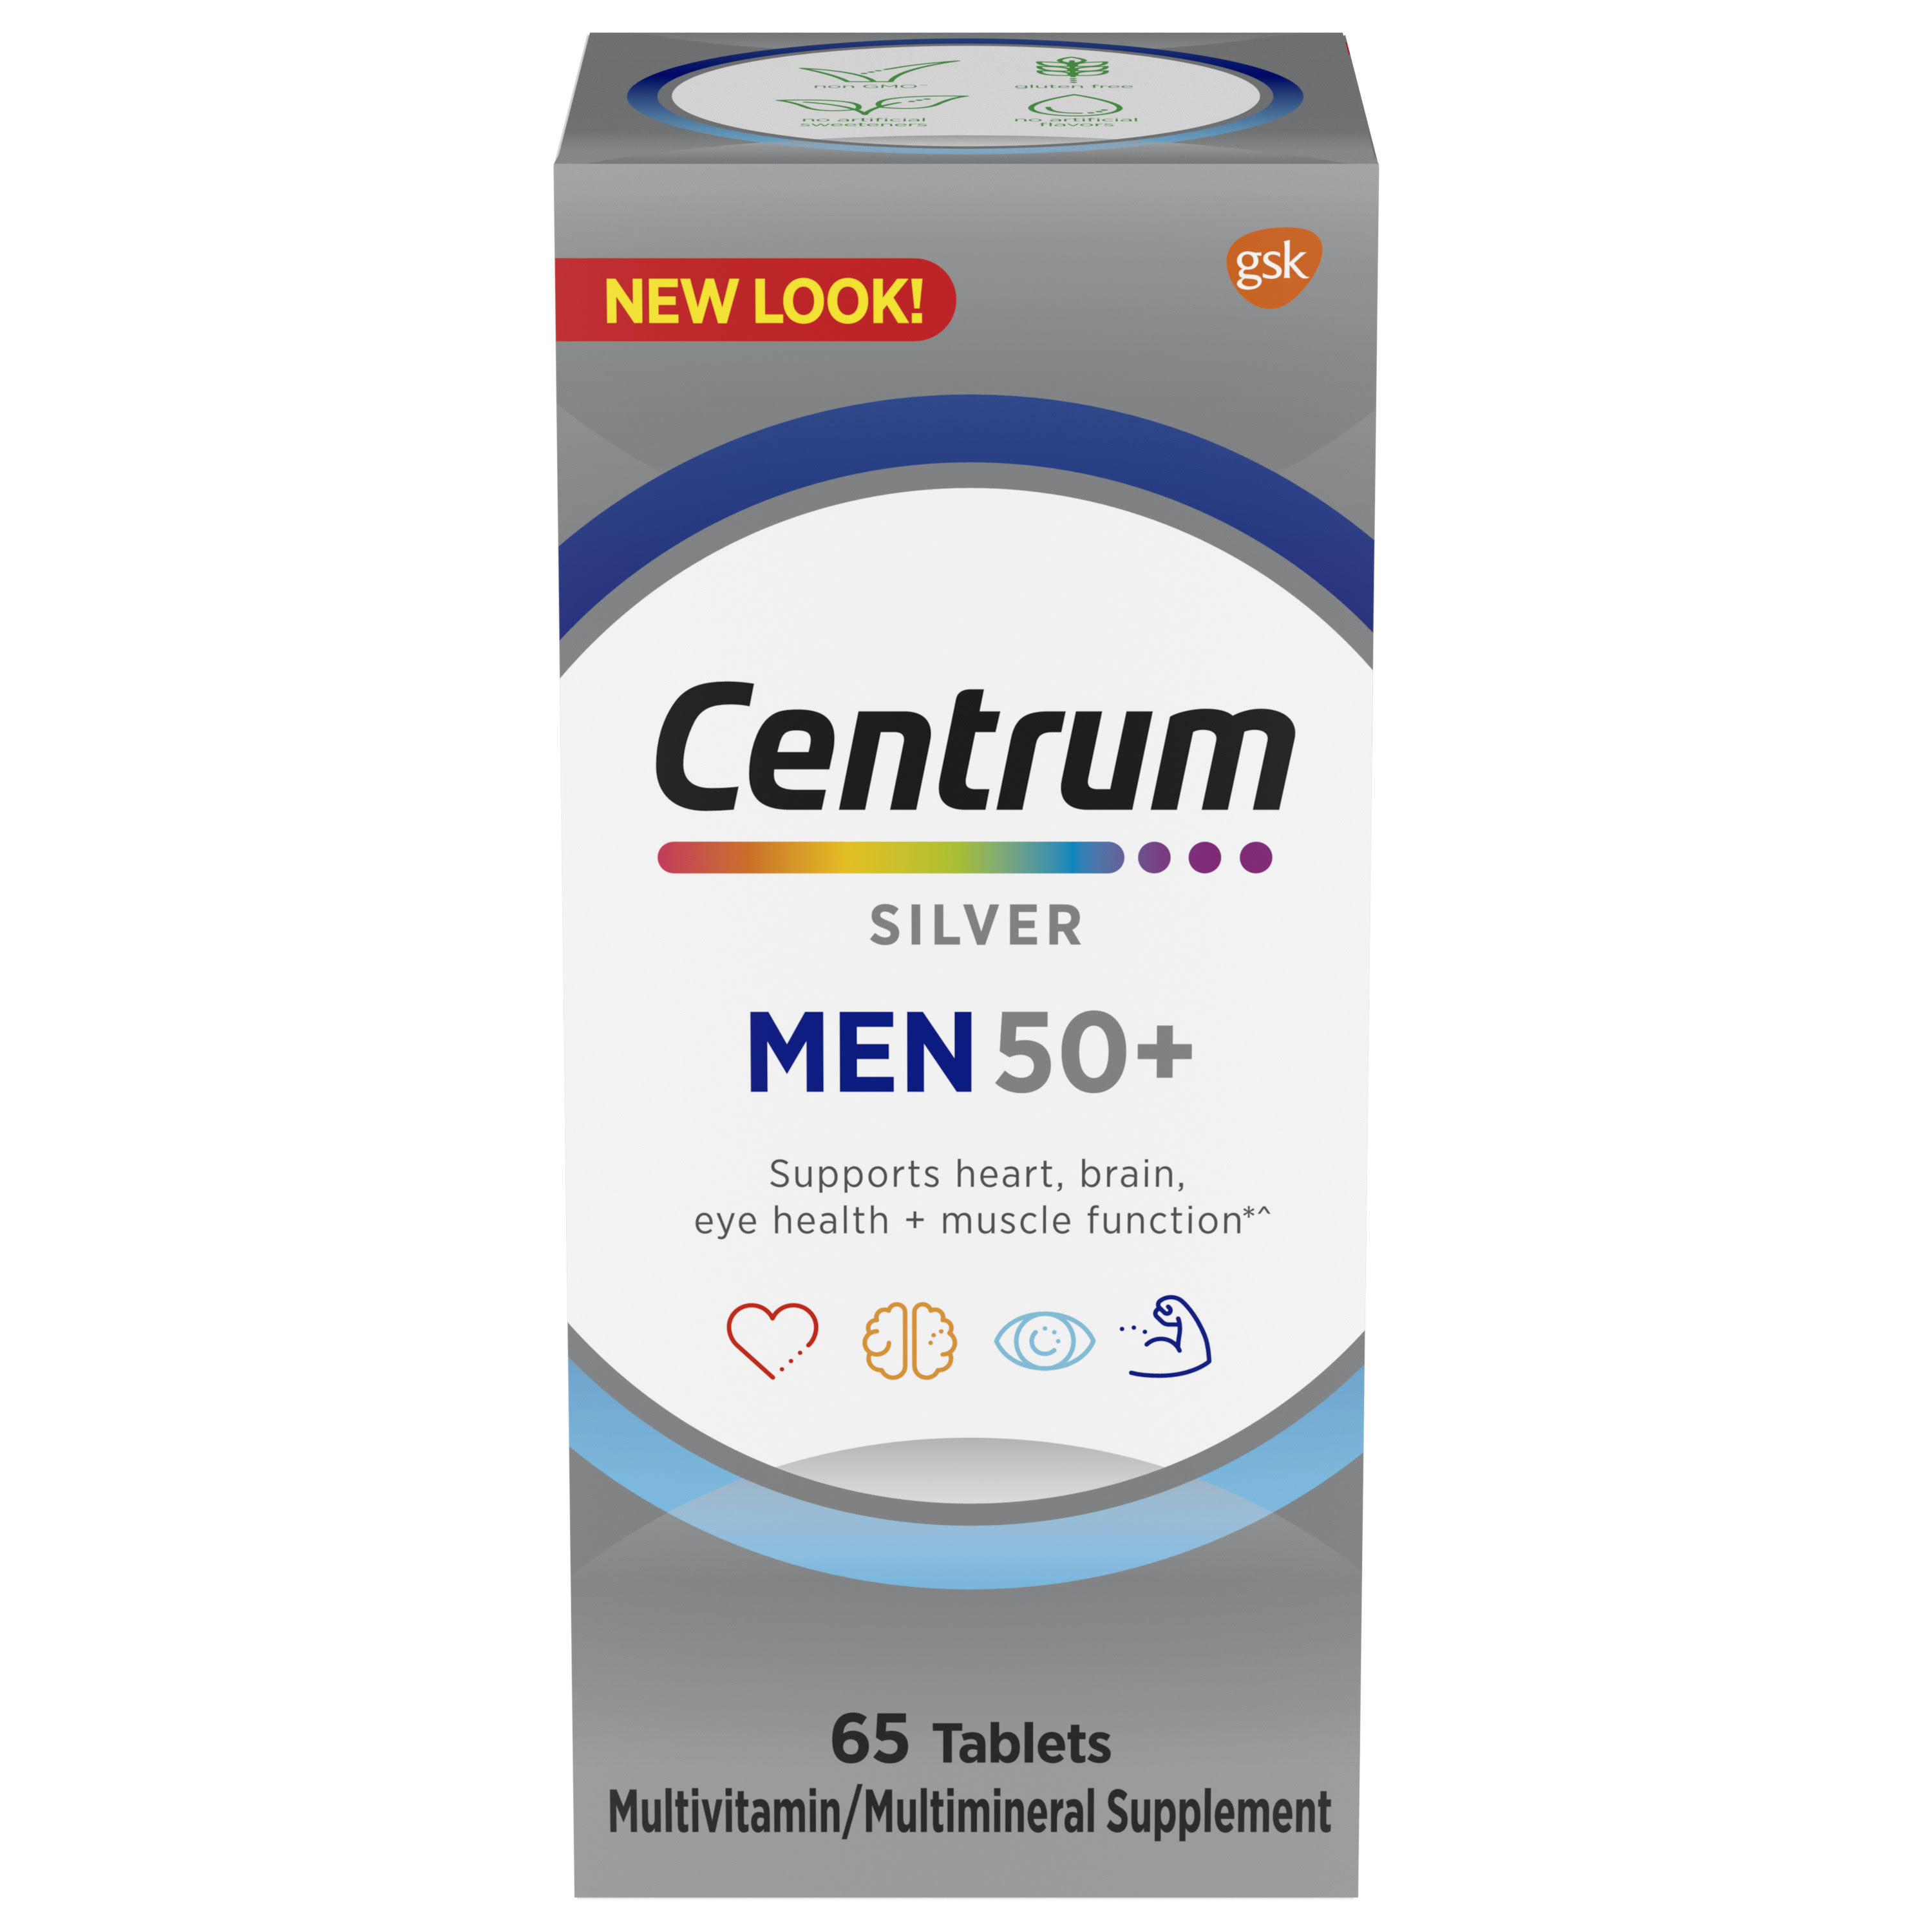 Centrum Silver Multivitamin/Multimineral, Tablets, Men 50+ - 65 tablets